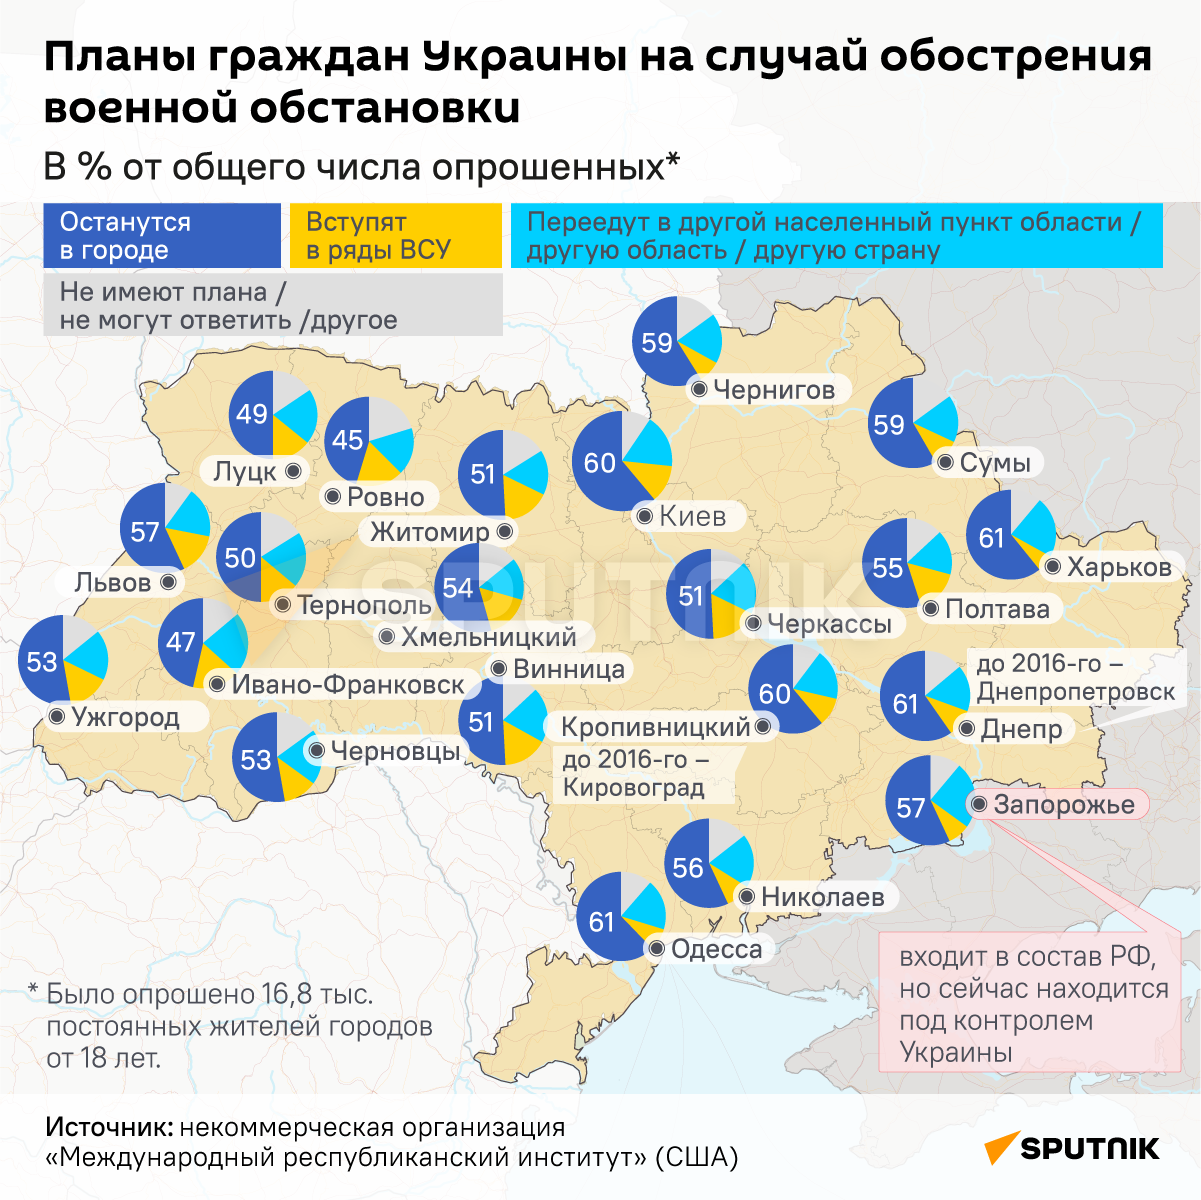 Планы граждан Украины на случай обострения военной обстановки  - Sputnik Узбекистан